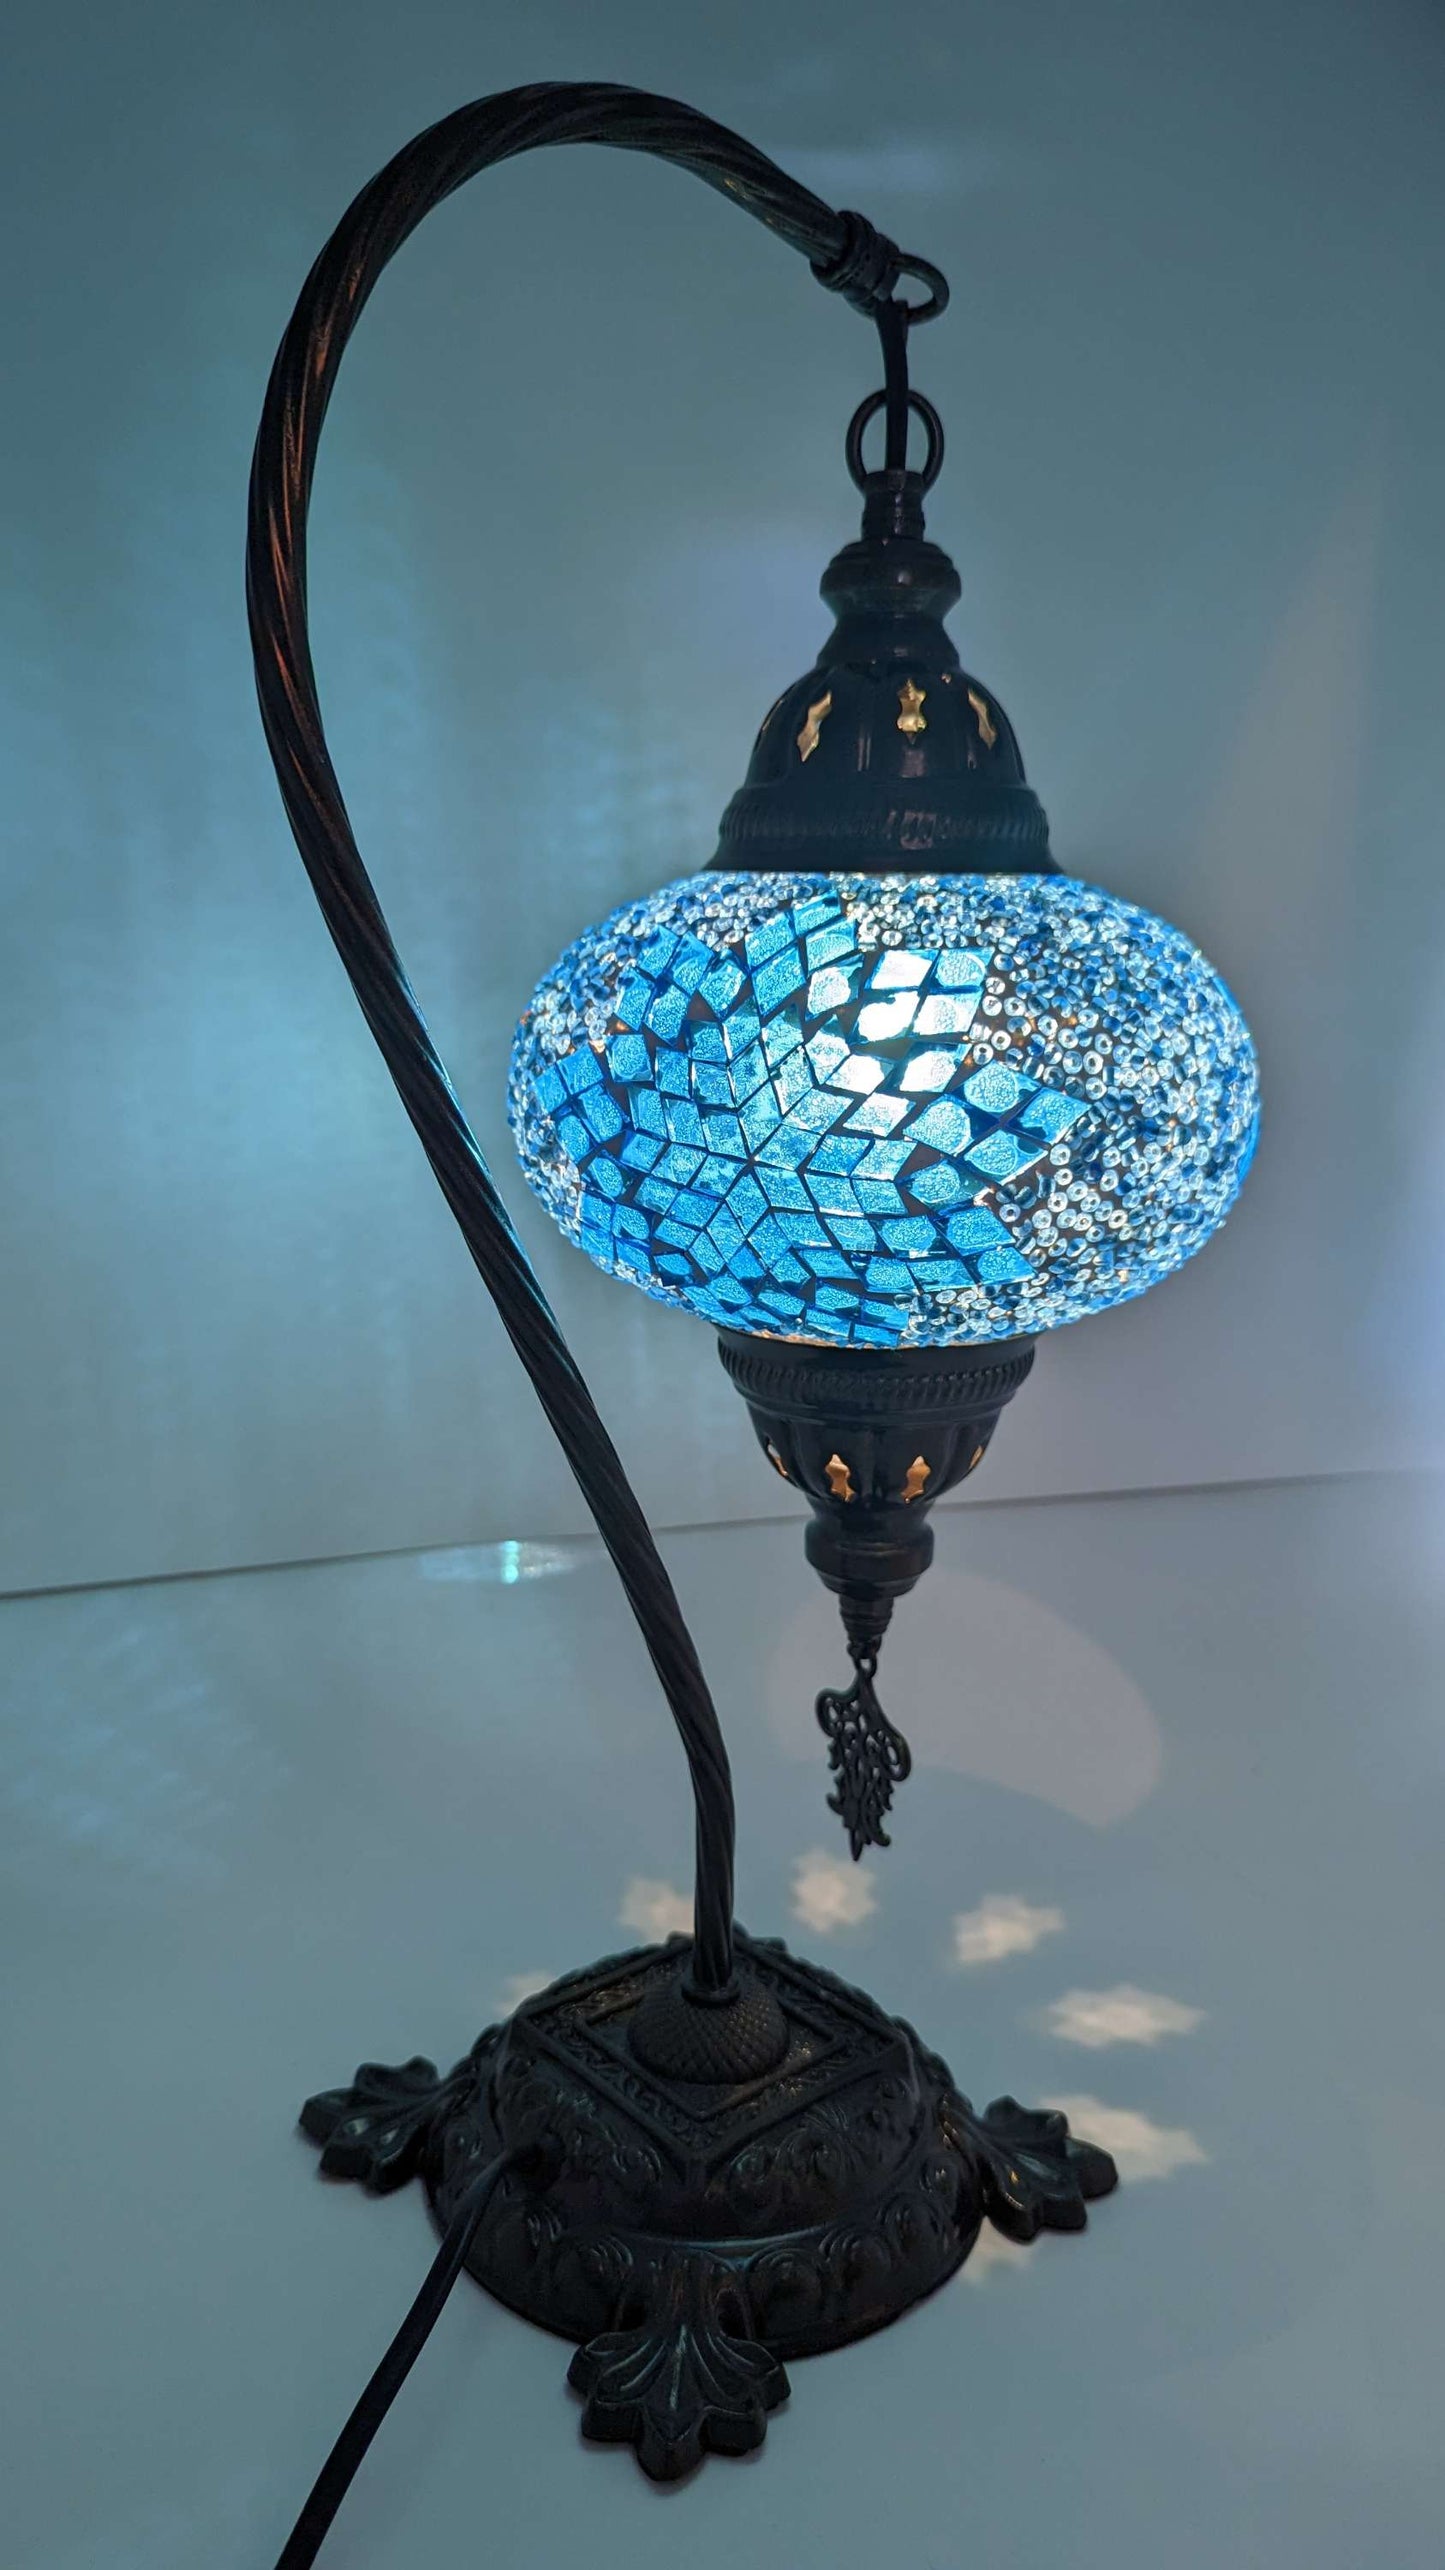 Mosaic Turkish Table Lanterns